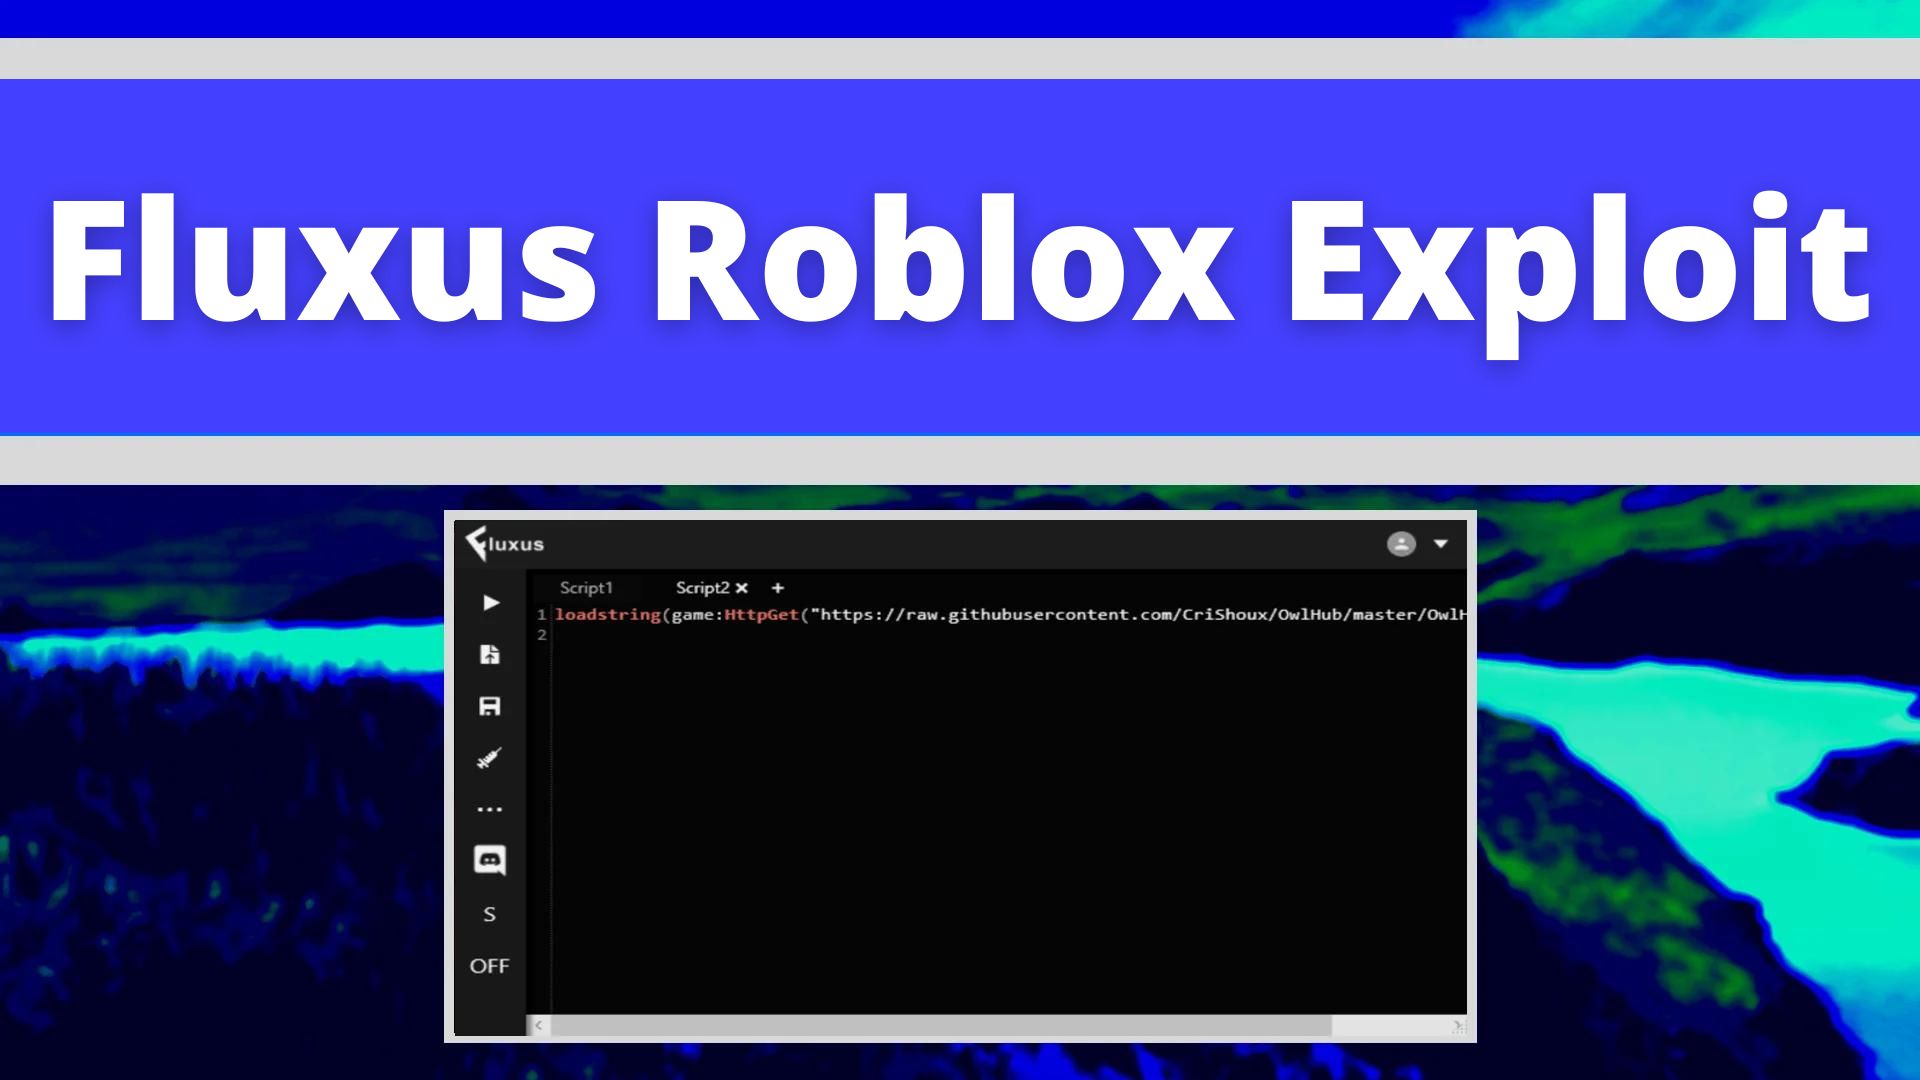 fluxus roblox exploit